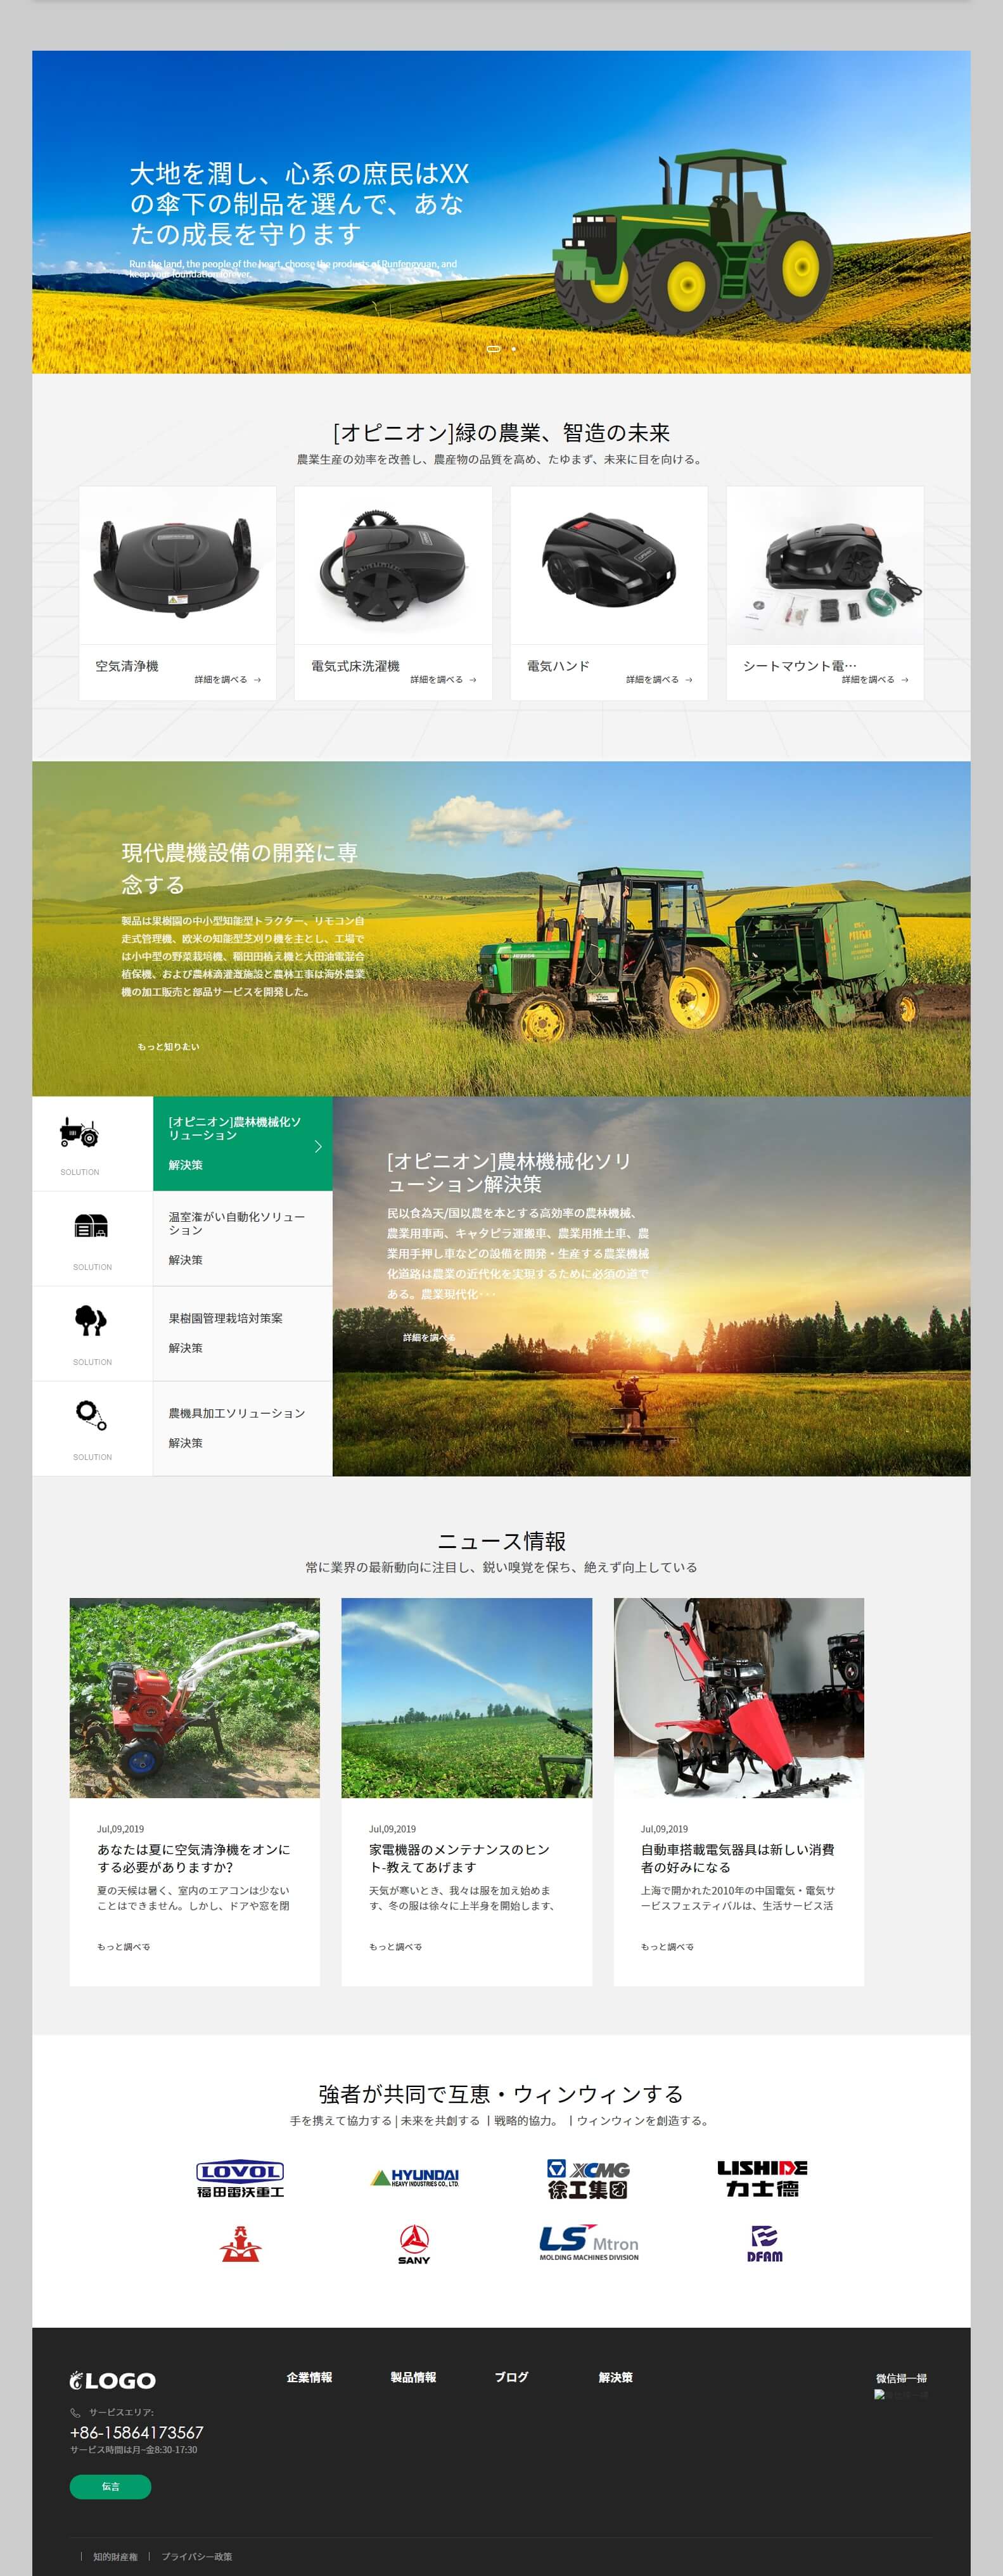 农业机械中英日三语企业网站源码程序-EN012-3